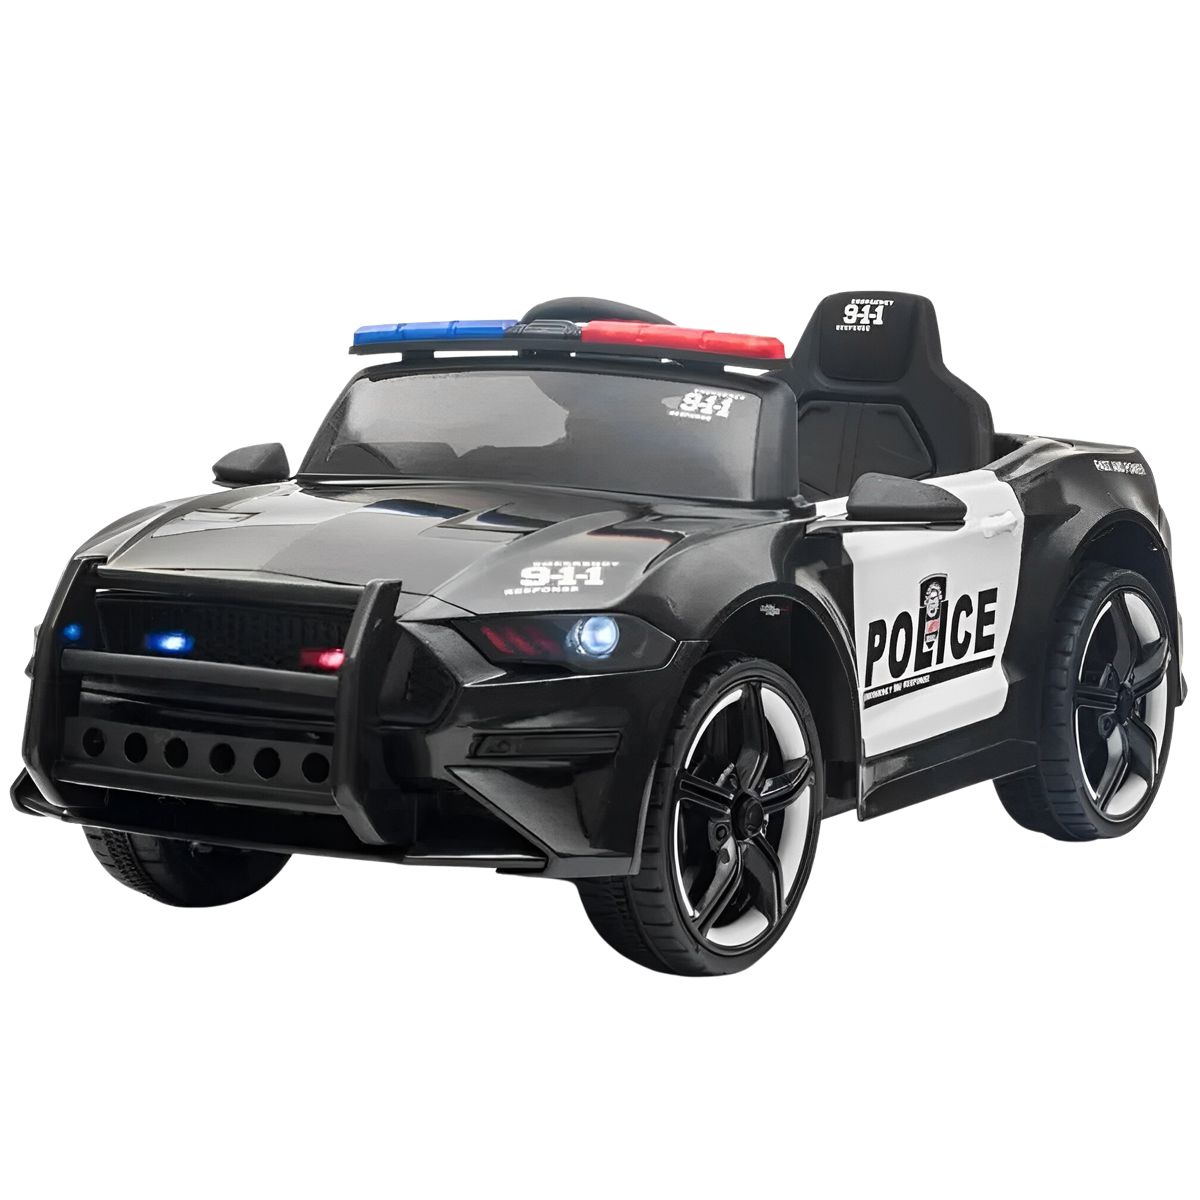 Carro Elétrico de Policia Infantil 12V Recarregável com 3 Velocidades, e,  ENYOPRO, Preto - Dular